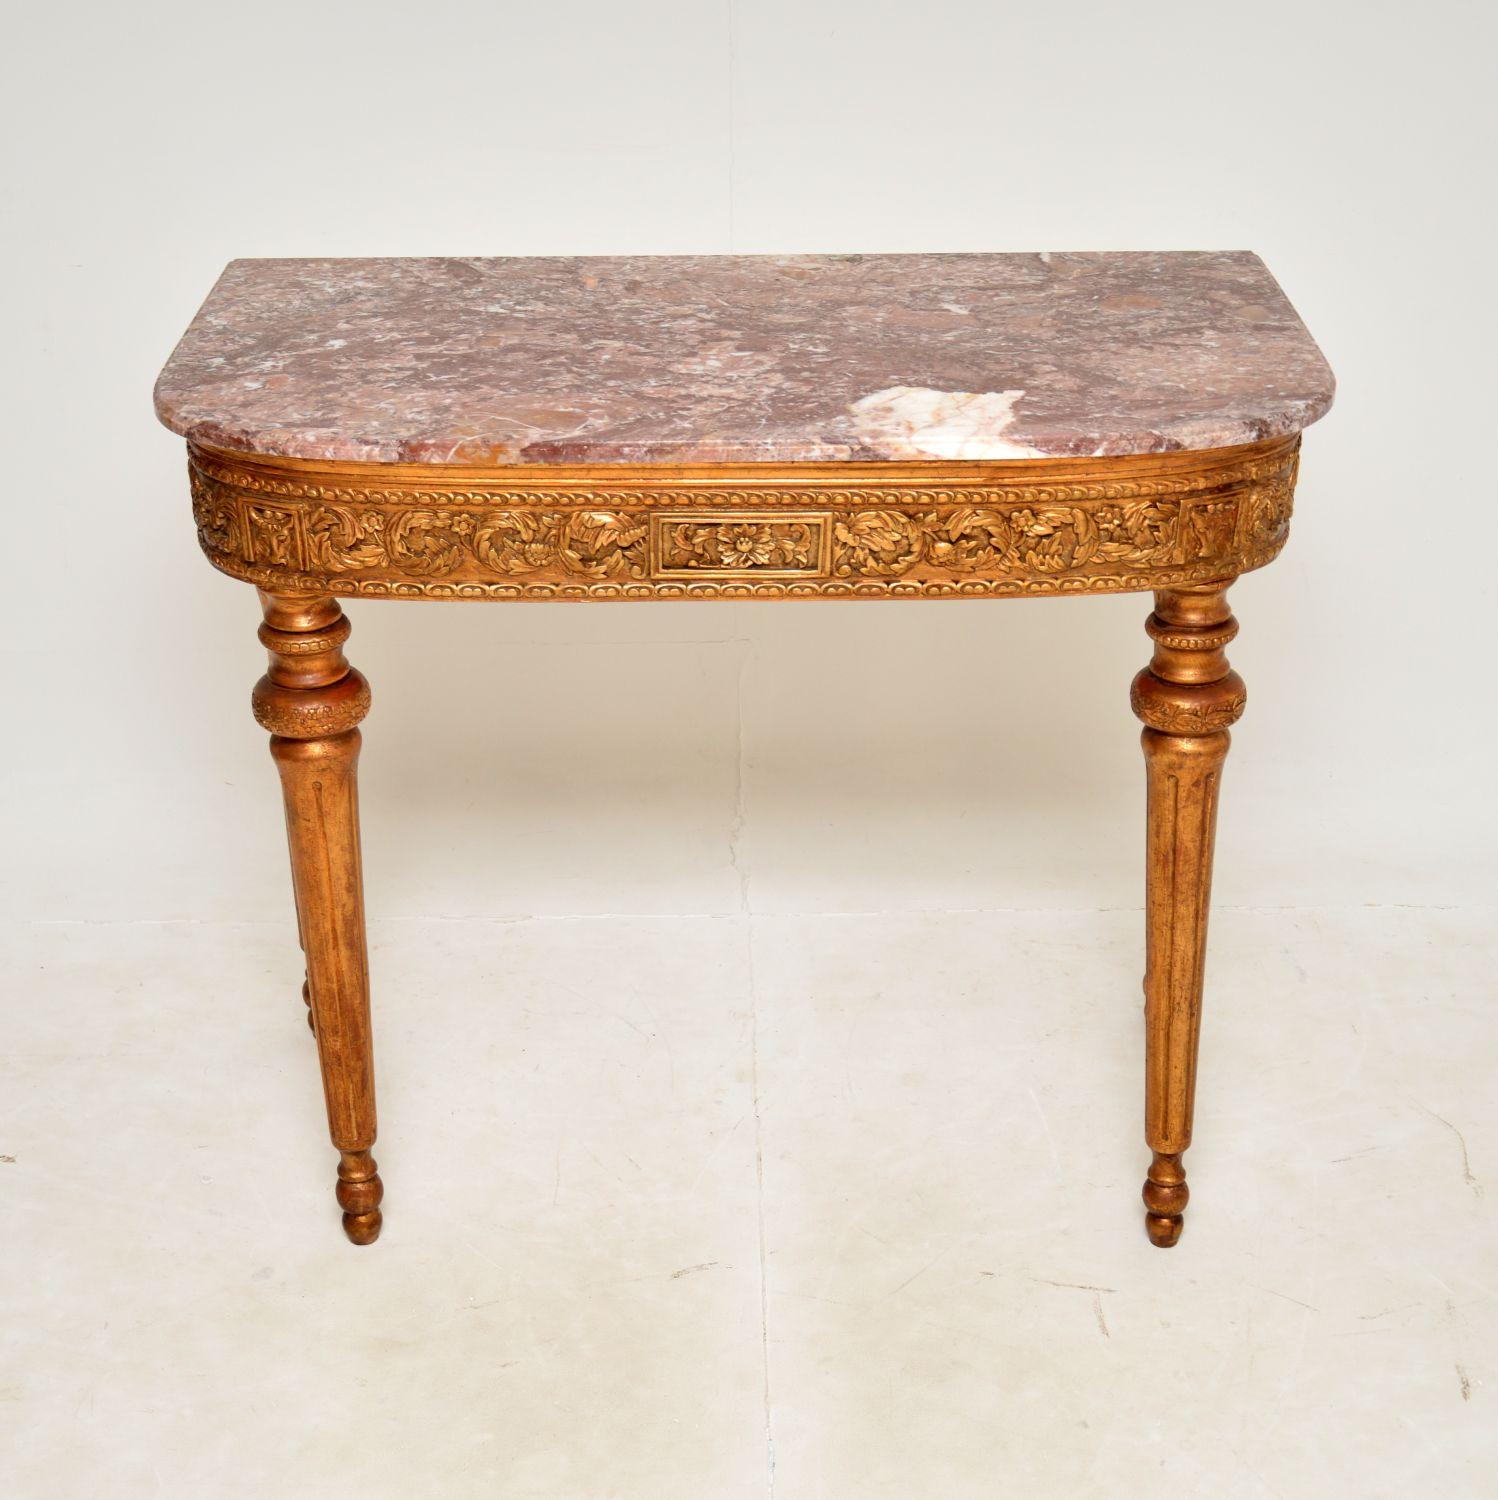 Magnifique console ancienne en bois doré avec un plateau en marbre. Il a été fabriqué en France et je le daterais de la période 1900-1920.

Il est d'une qualité exceptionnelle et est extrêmement impressionnant. Il est de grande taille, le cadre en